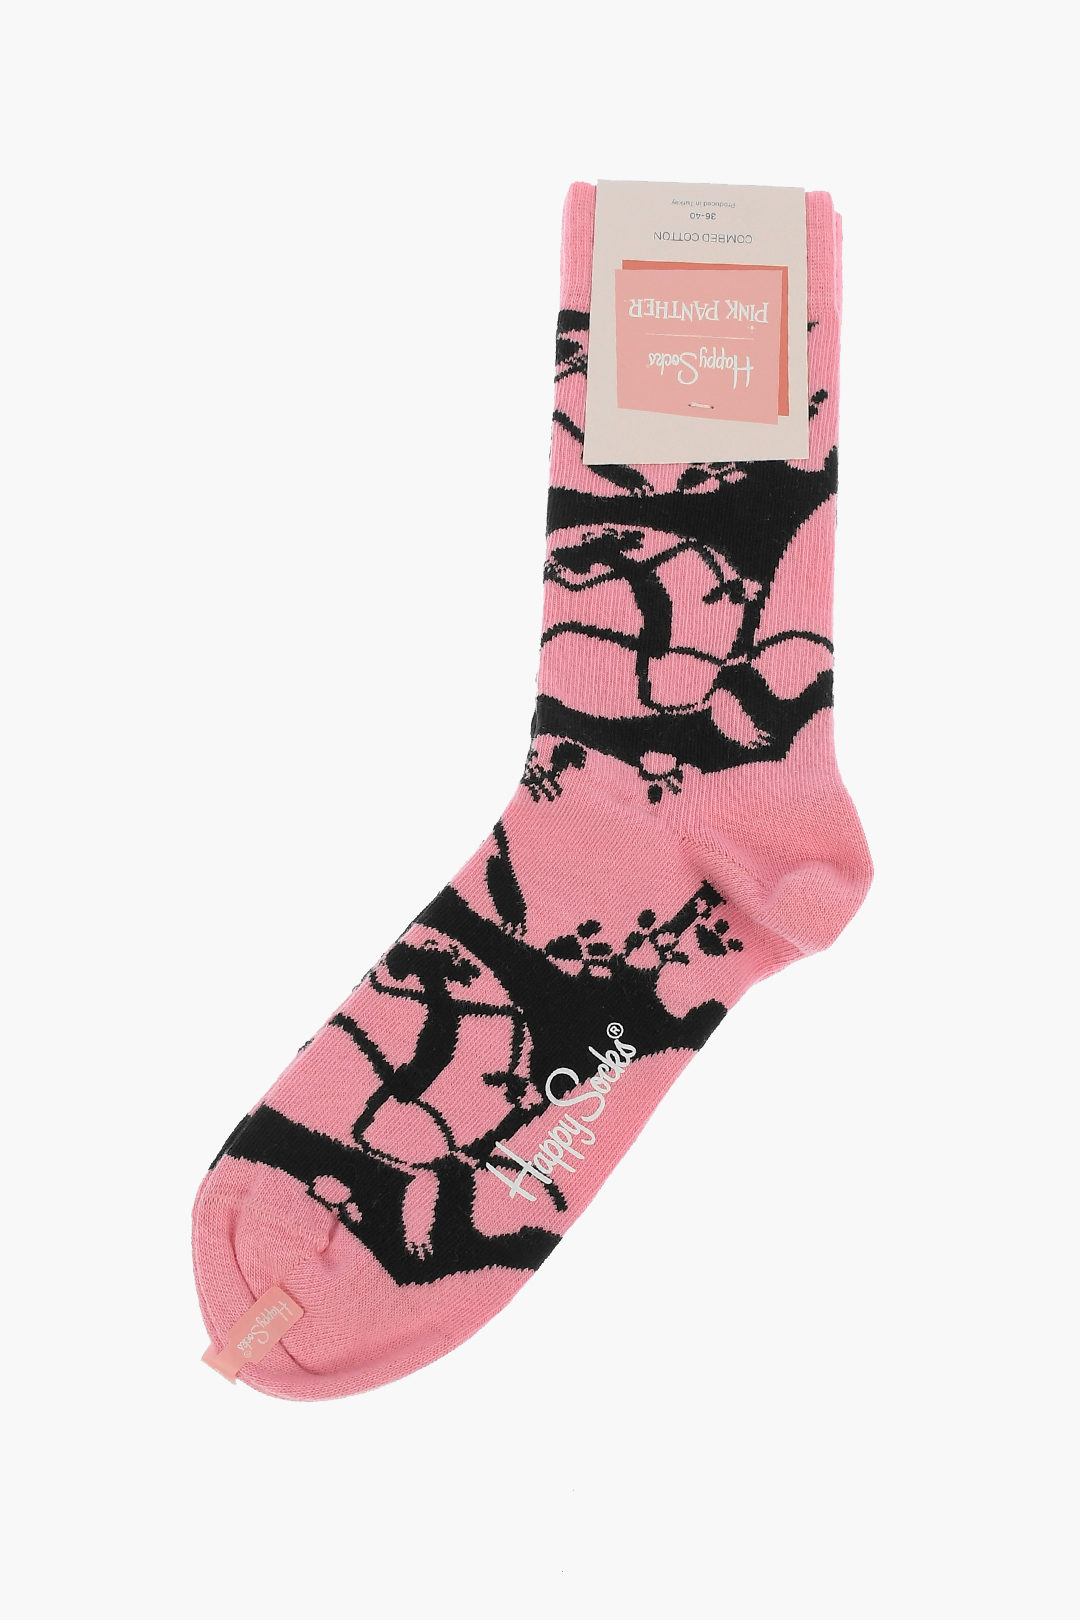 Happy Socks Socken Pink Panther 36-40 Pink Panic Sock schwarz / rosa 41-46